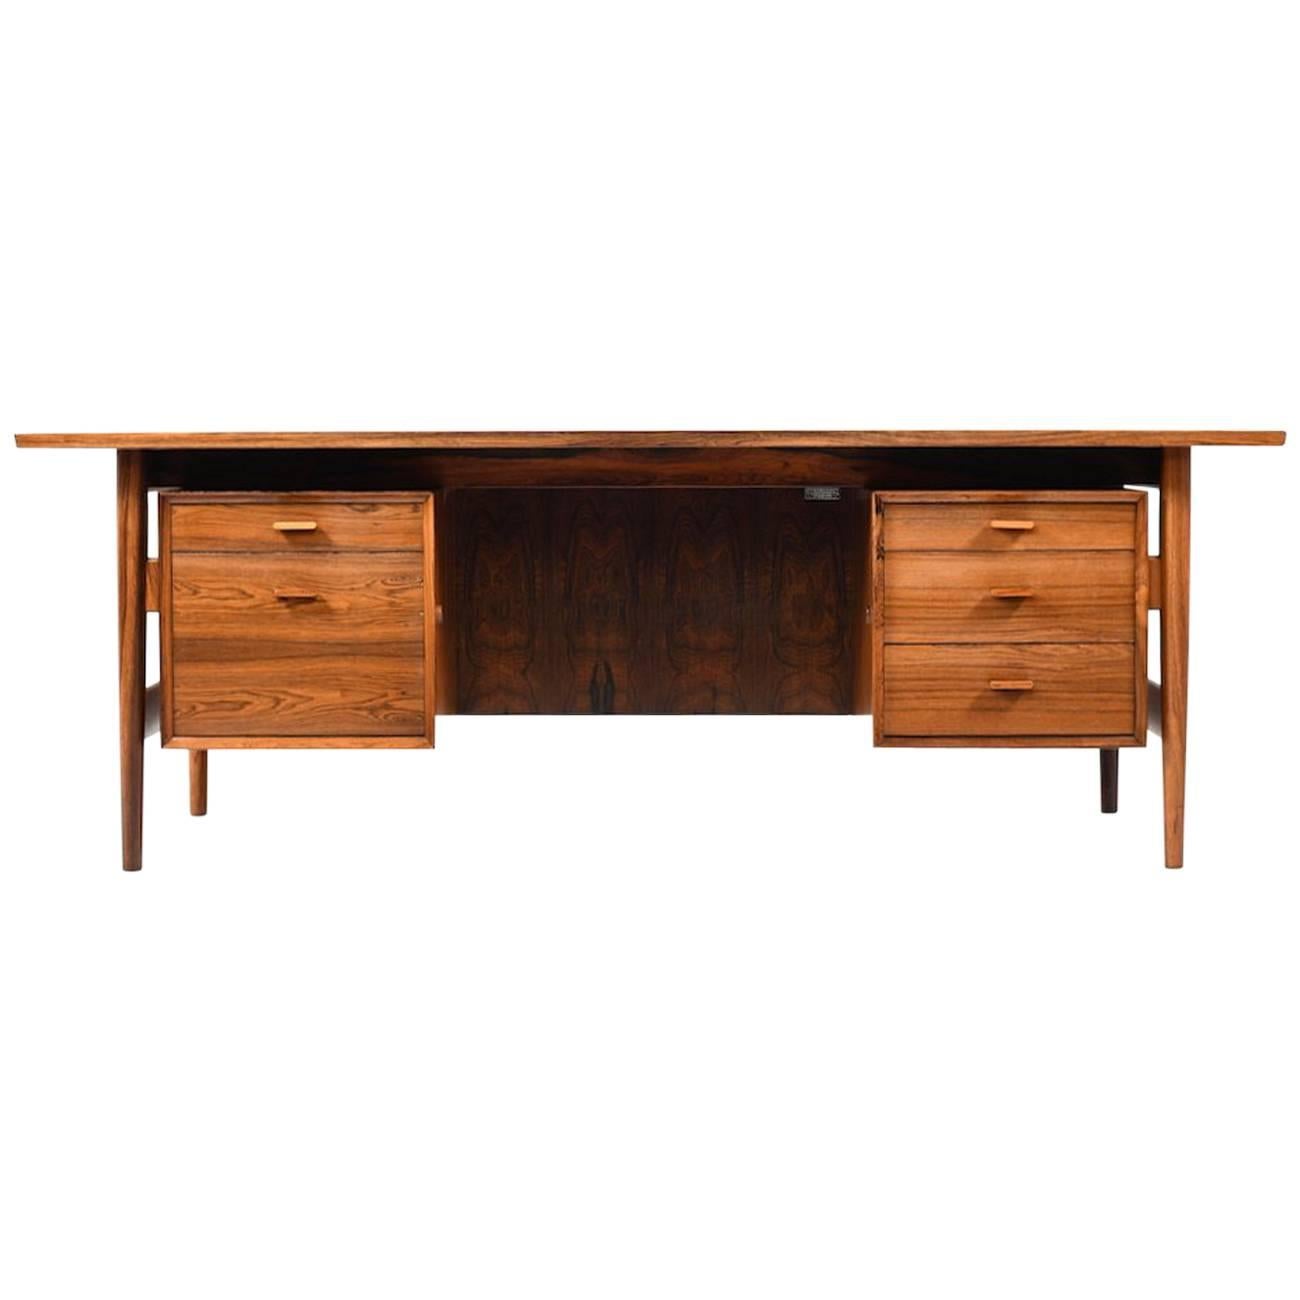 Fine Arne Vodder Rosewood Desk for Sibast Furniture, Denmark, 1960s For Sale